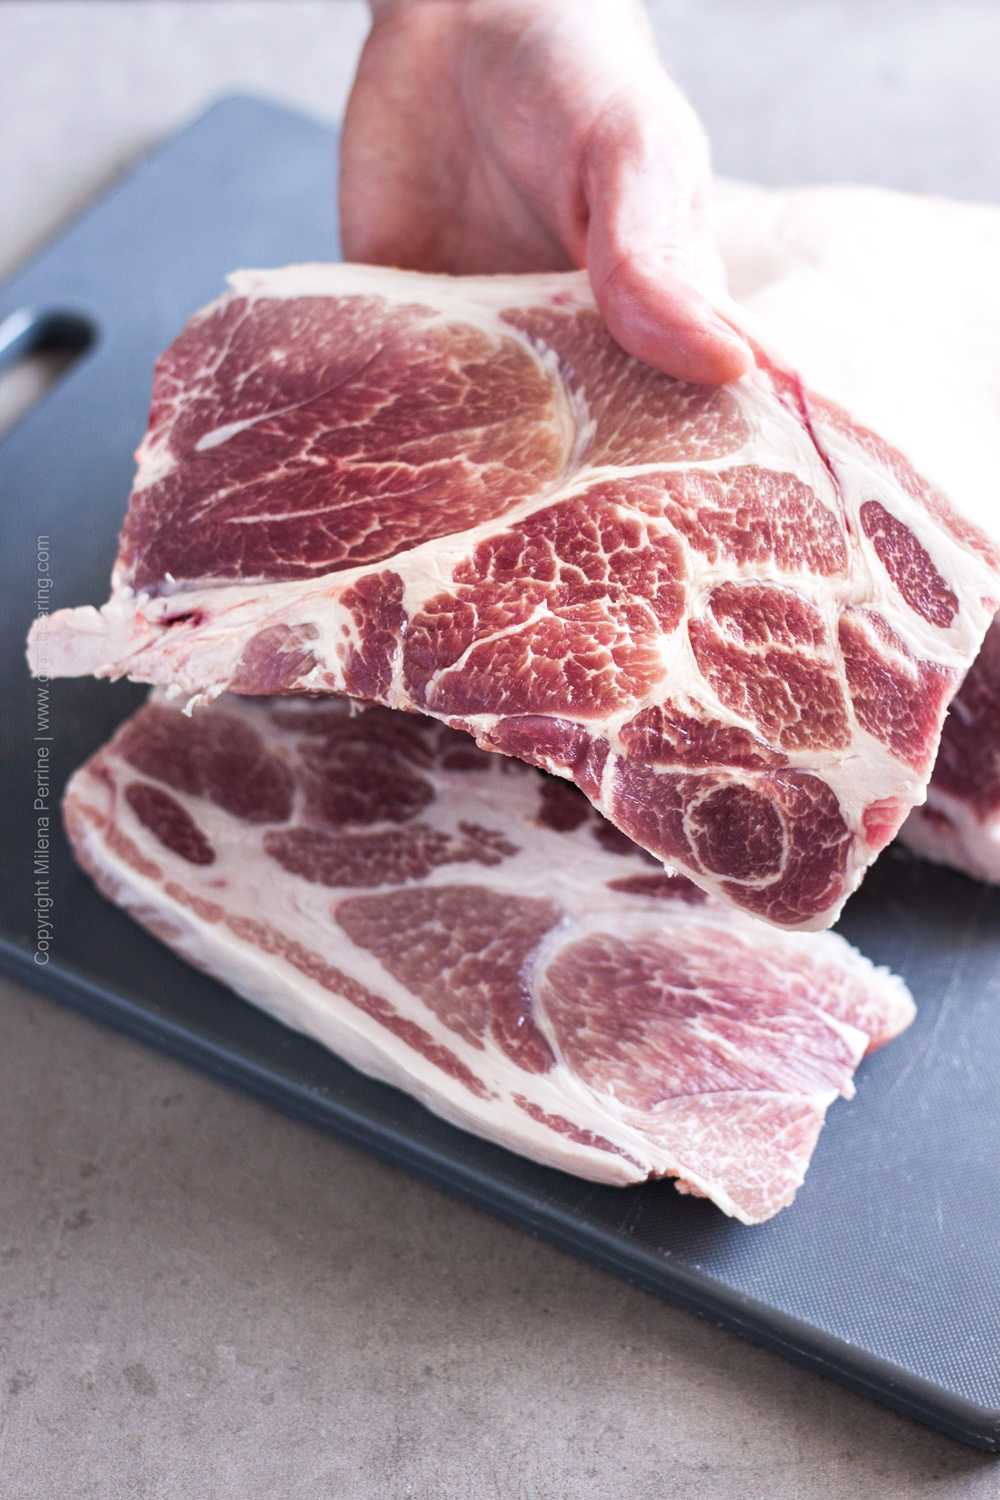 Raw pork shoulder blade steak carved from a whole bone in pork shoulder.